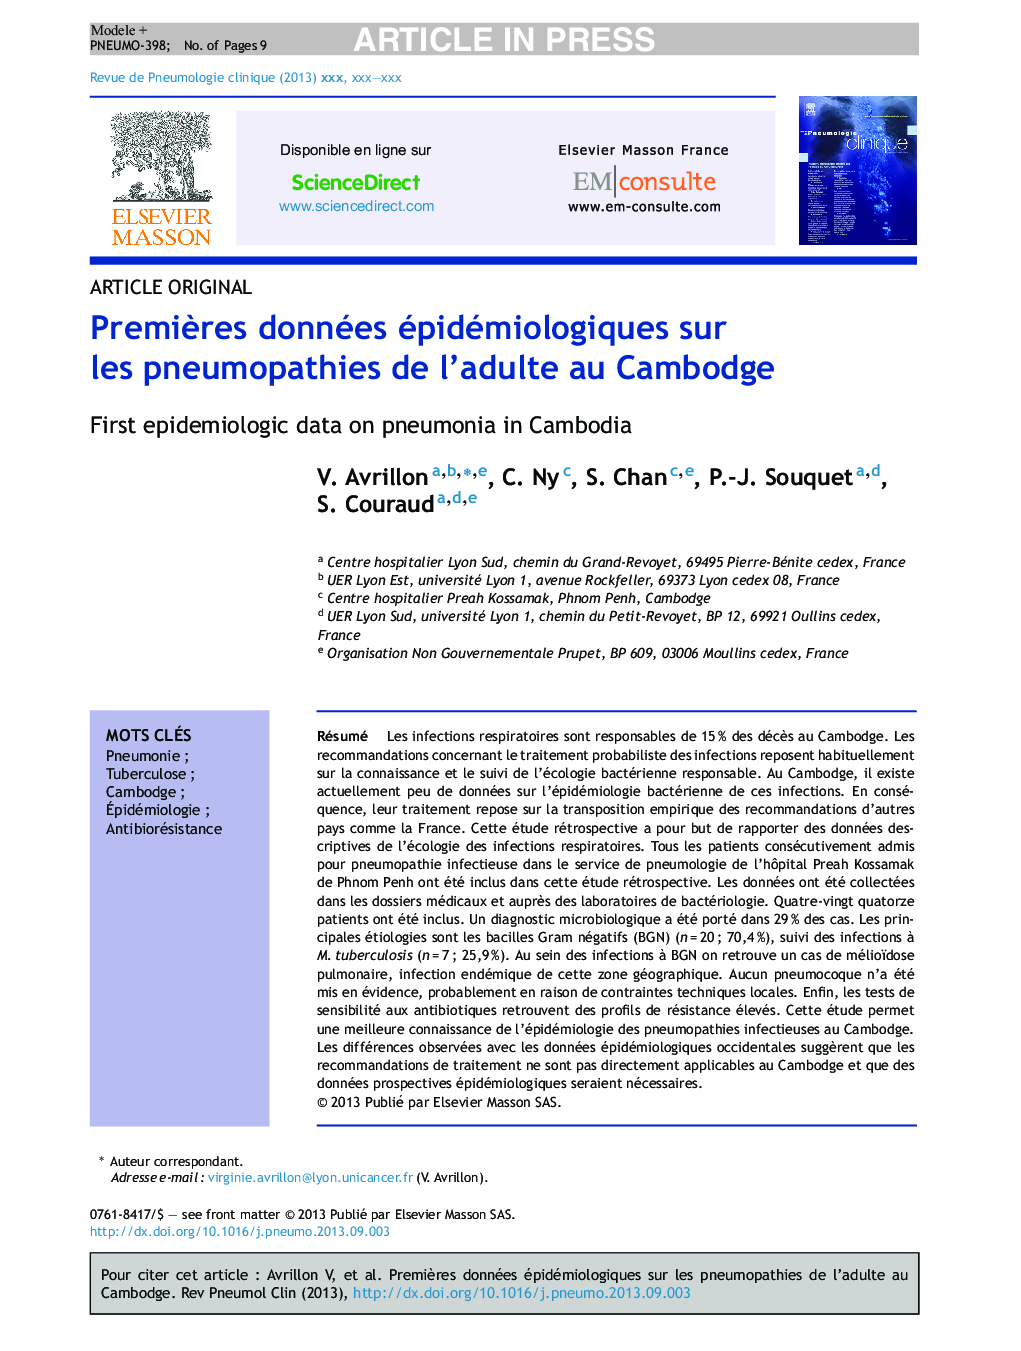 PremiÃ¨res données épidémiologiques sur les pneumopathies de l'adulte au Cambodge